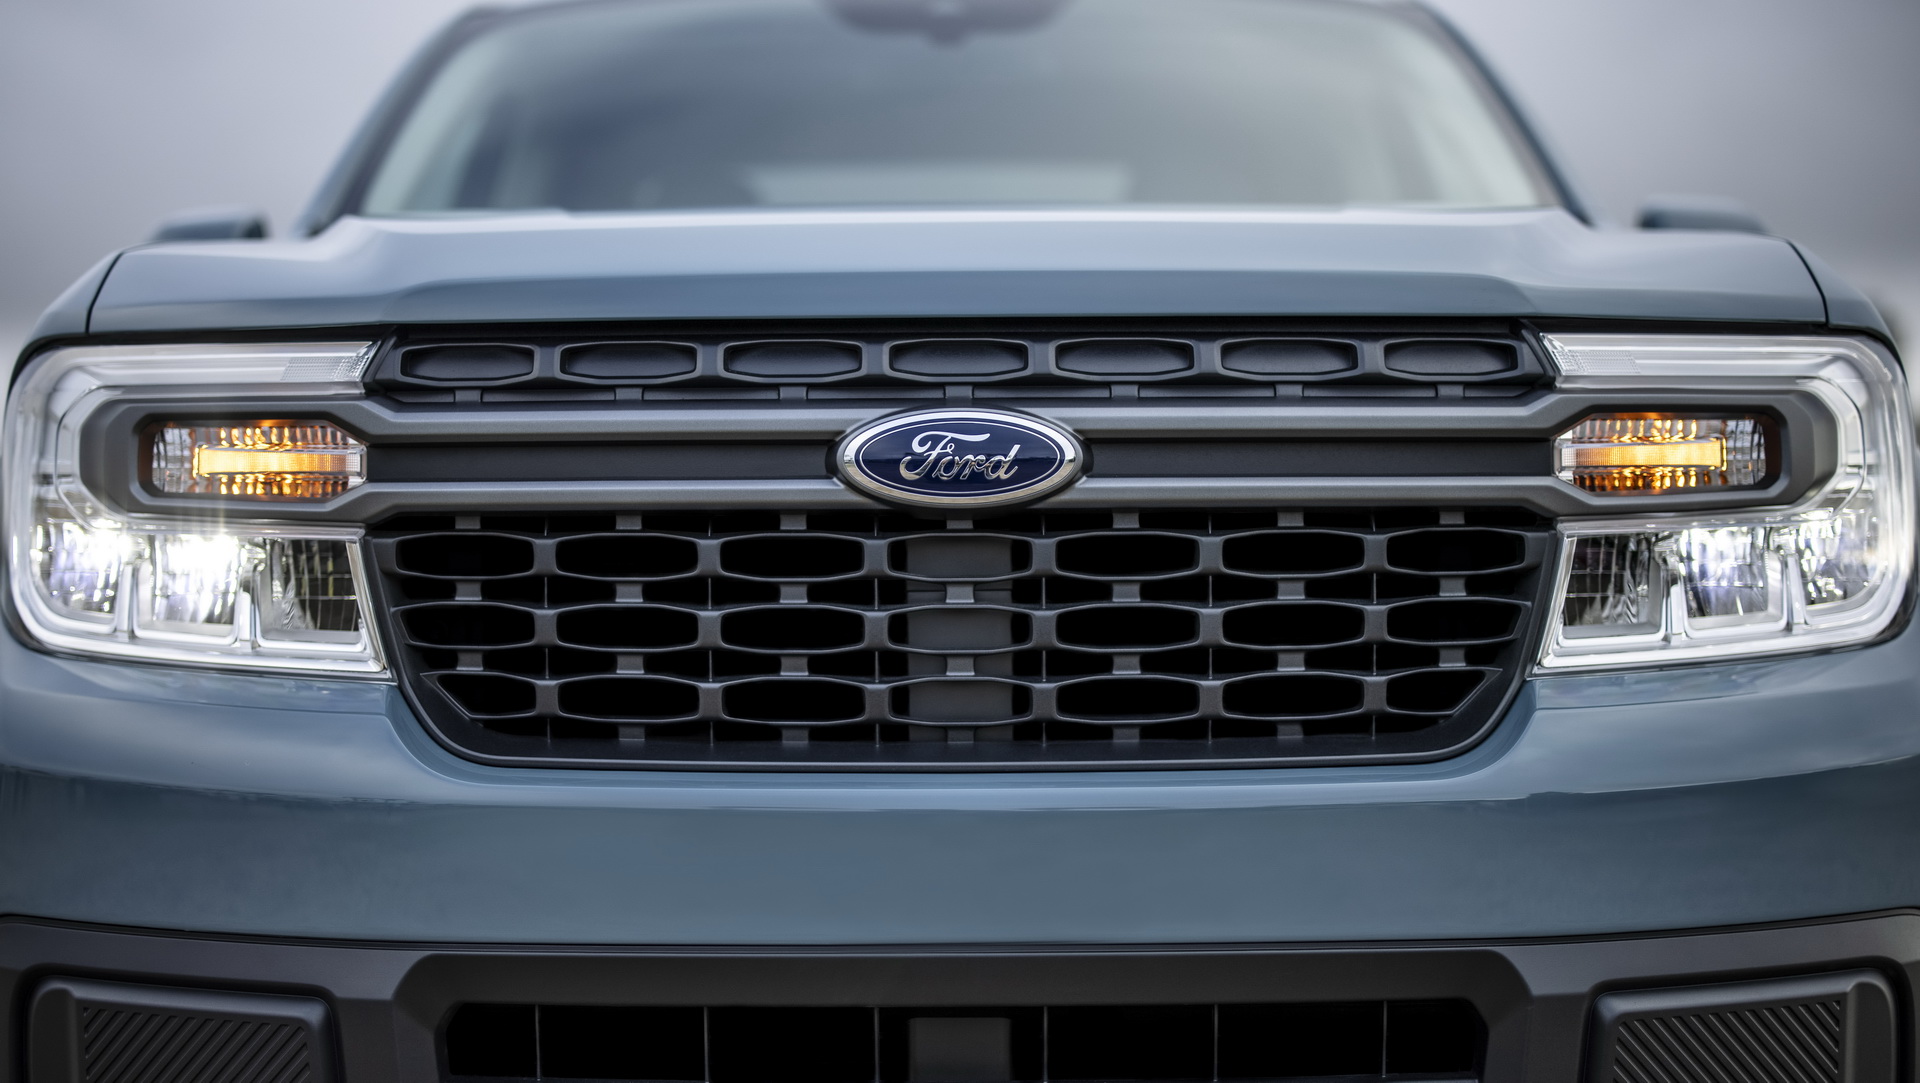 Tiểu Ford Ranger ra mắt với thiết kế mãn nhãn, giá bán chỉ từ 458 triệu đồng